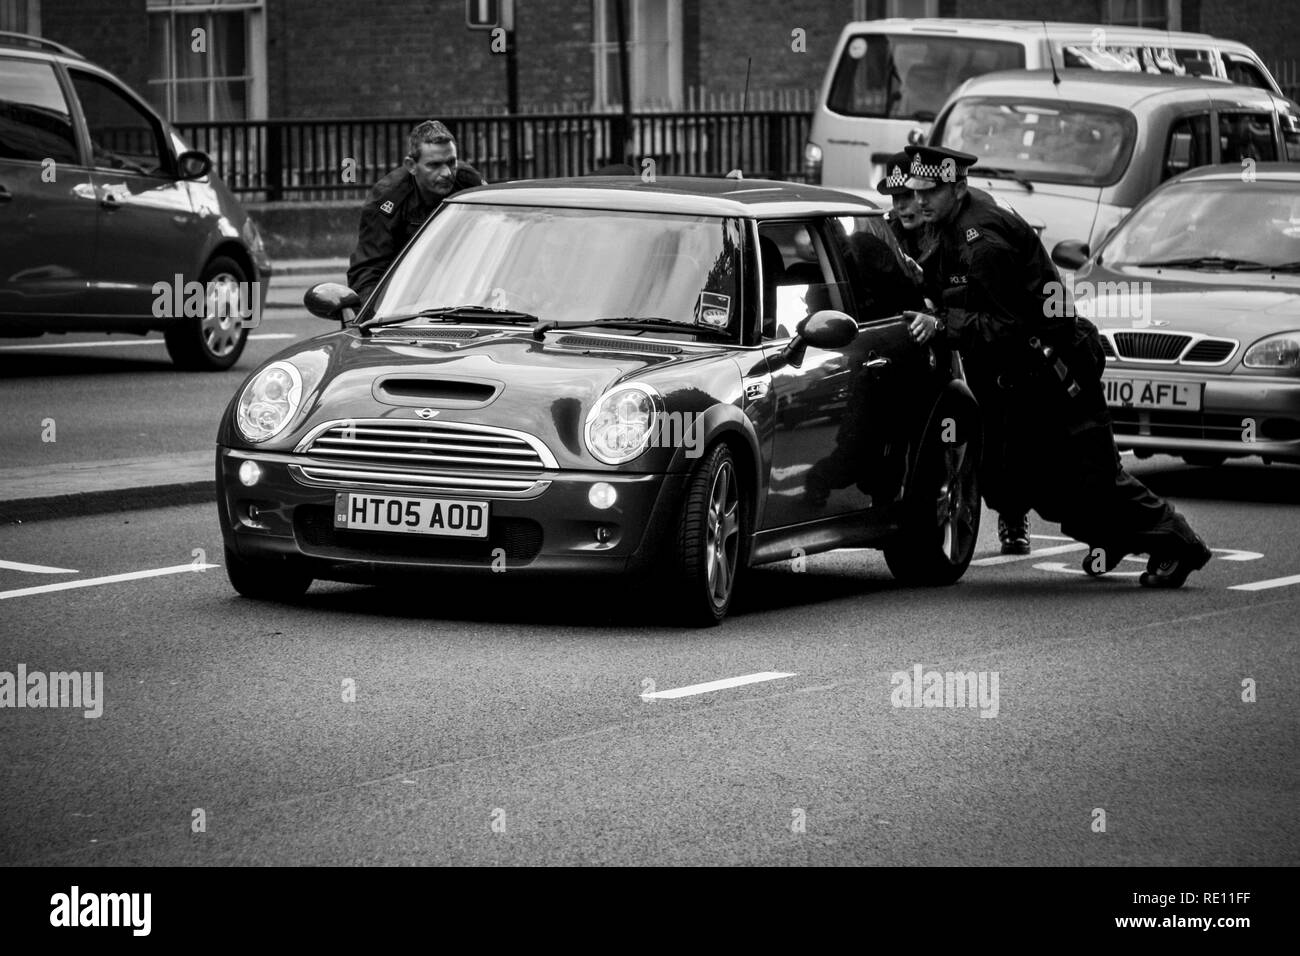 Drei Britische Polizisten in Uniform Schieben eines Mini Cooper nach einer Pause von der rechten Spur in Richtung einer geeigneten Stelle - London, Großbritannien Stockfoto